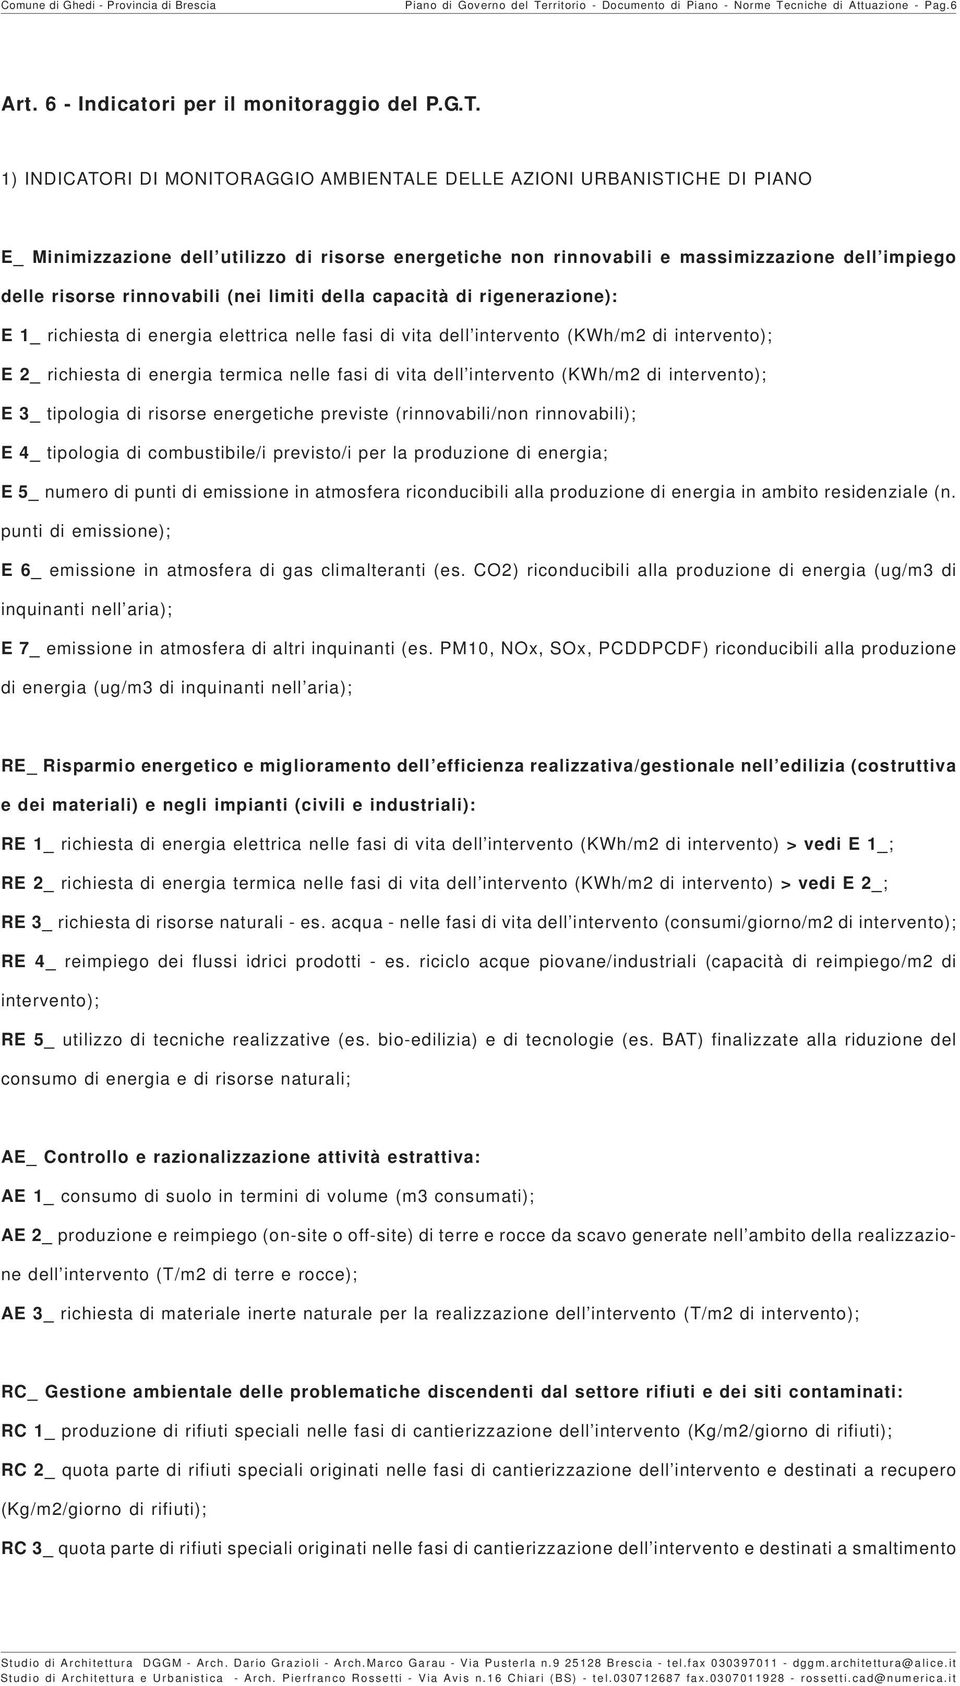 cniche di Attuazione - Pag.6 Art. 6 - Indicatori per il monitoraggio del P.G.T.